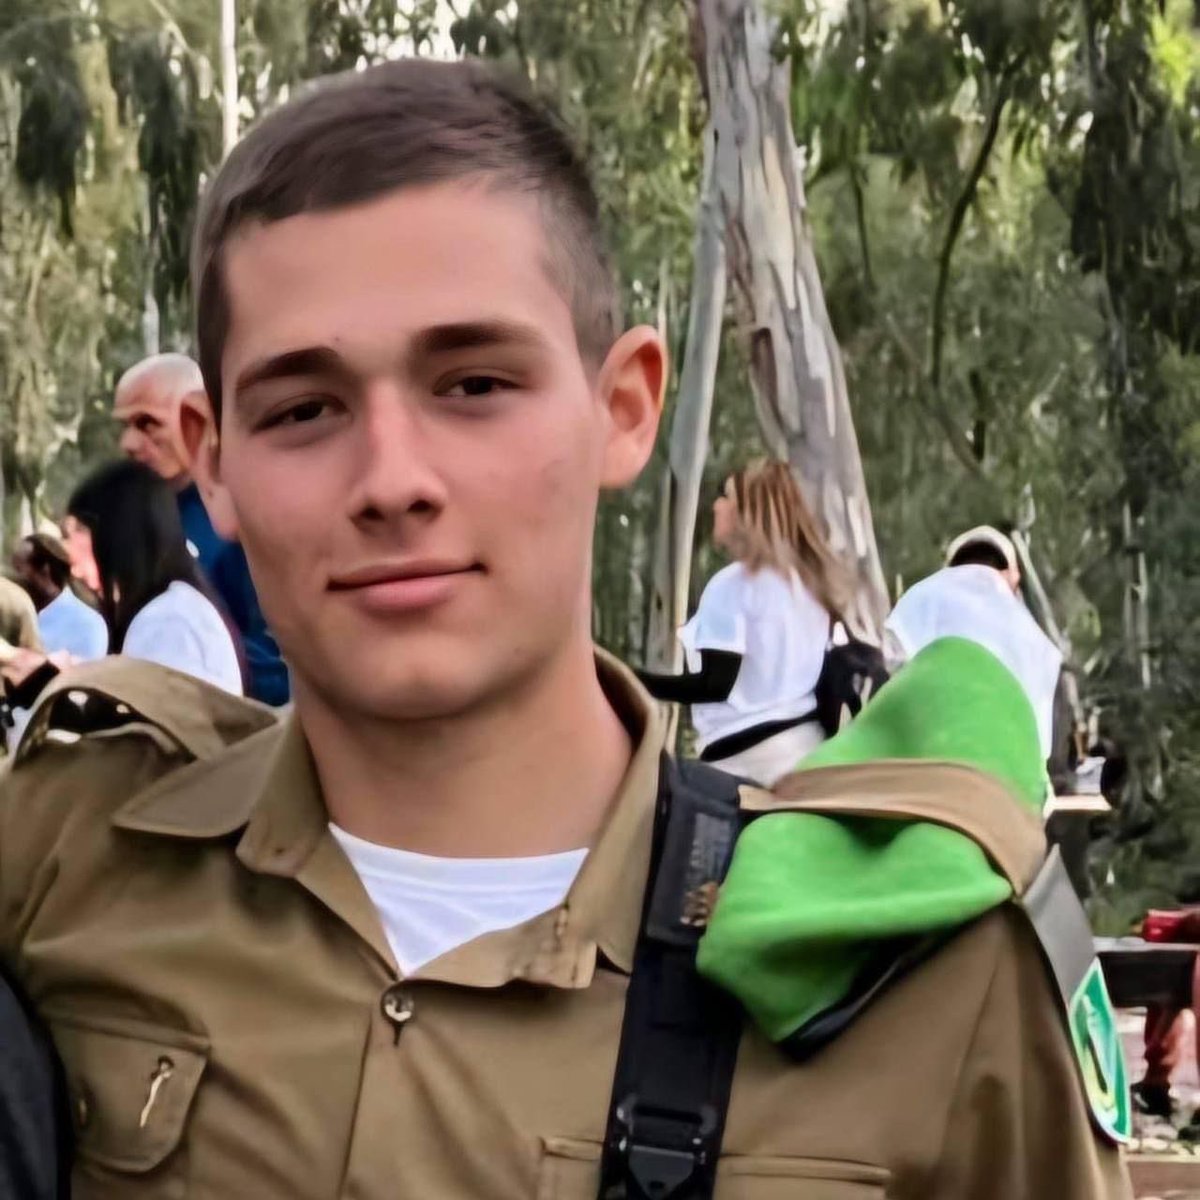 נשבר הלב💔   סמל מיכאל רוזל, בן 18, מראשון לציון, לוחם בגדוד 931, חטיבת הנח״ל, נפל באירוע הקשה שהתרחש אמש בכרם שלום. אני שולח תנחומים למשפחתו בשעתה הקשה ביותר. גיבור ישראל, יהי זכרו ברוך🕯️